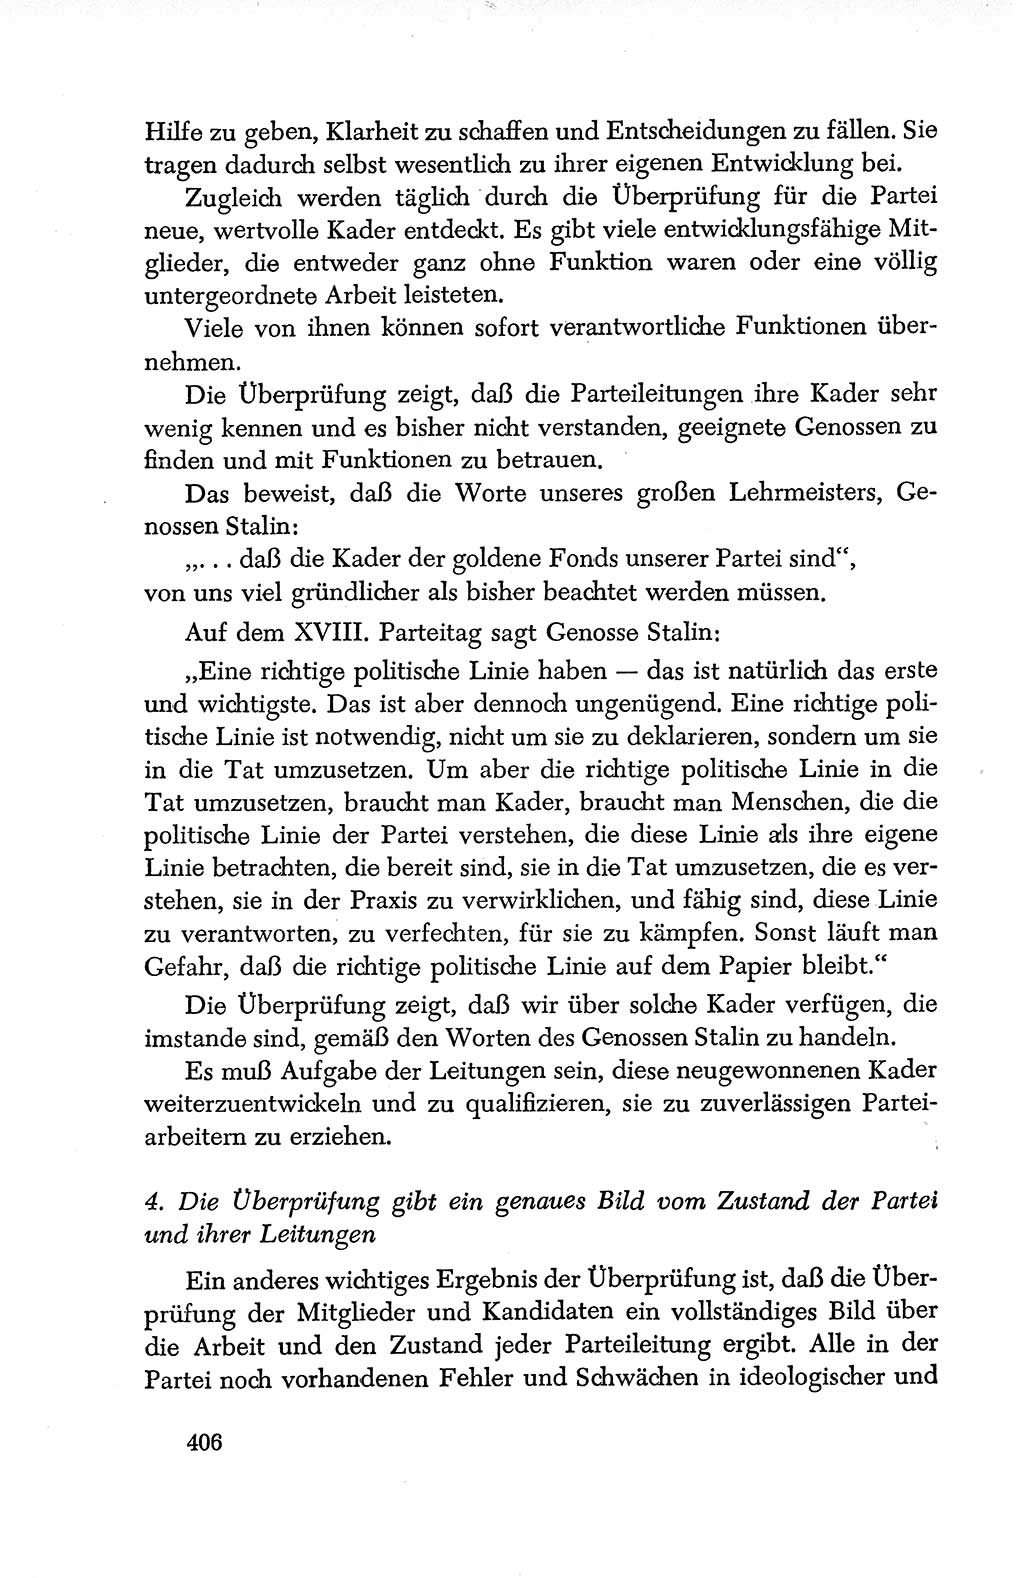 Dokumente der Sozialistischen Einheitspartei Deutschlands (SED) [Deutsche Demokratische Republik (DDR)] 1950-1952, Seite 406 (Dok. SED DDR 1950-1952, S. 406)